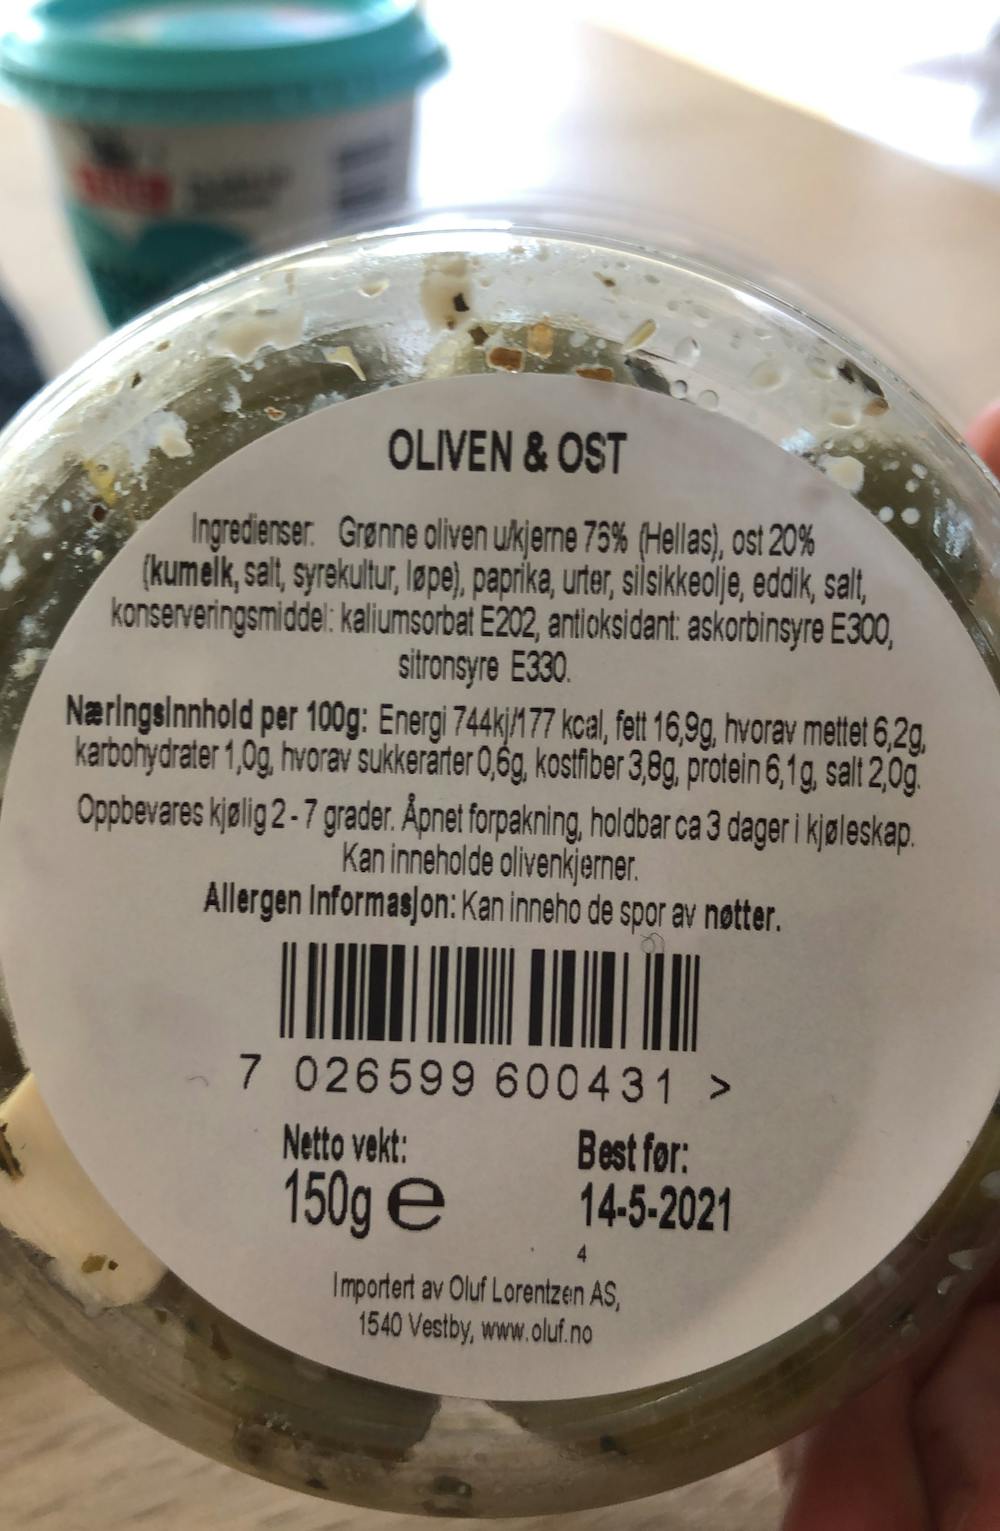 Ingredienslisten til Tapas, fersk oliven og ost, Qualind